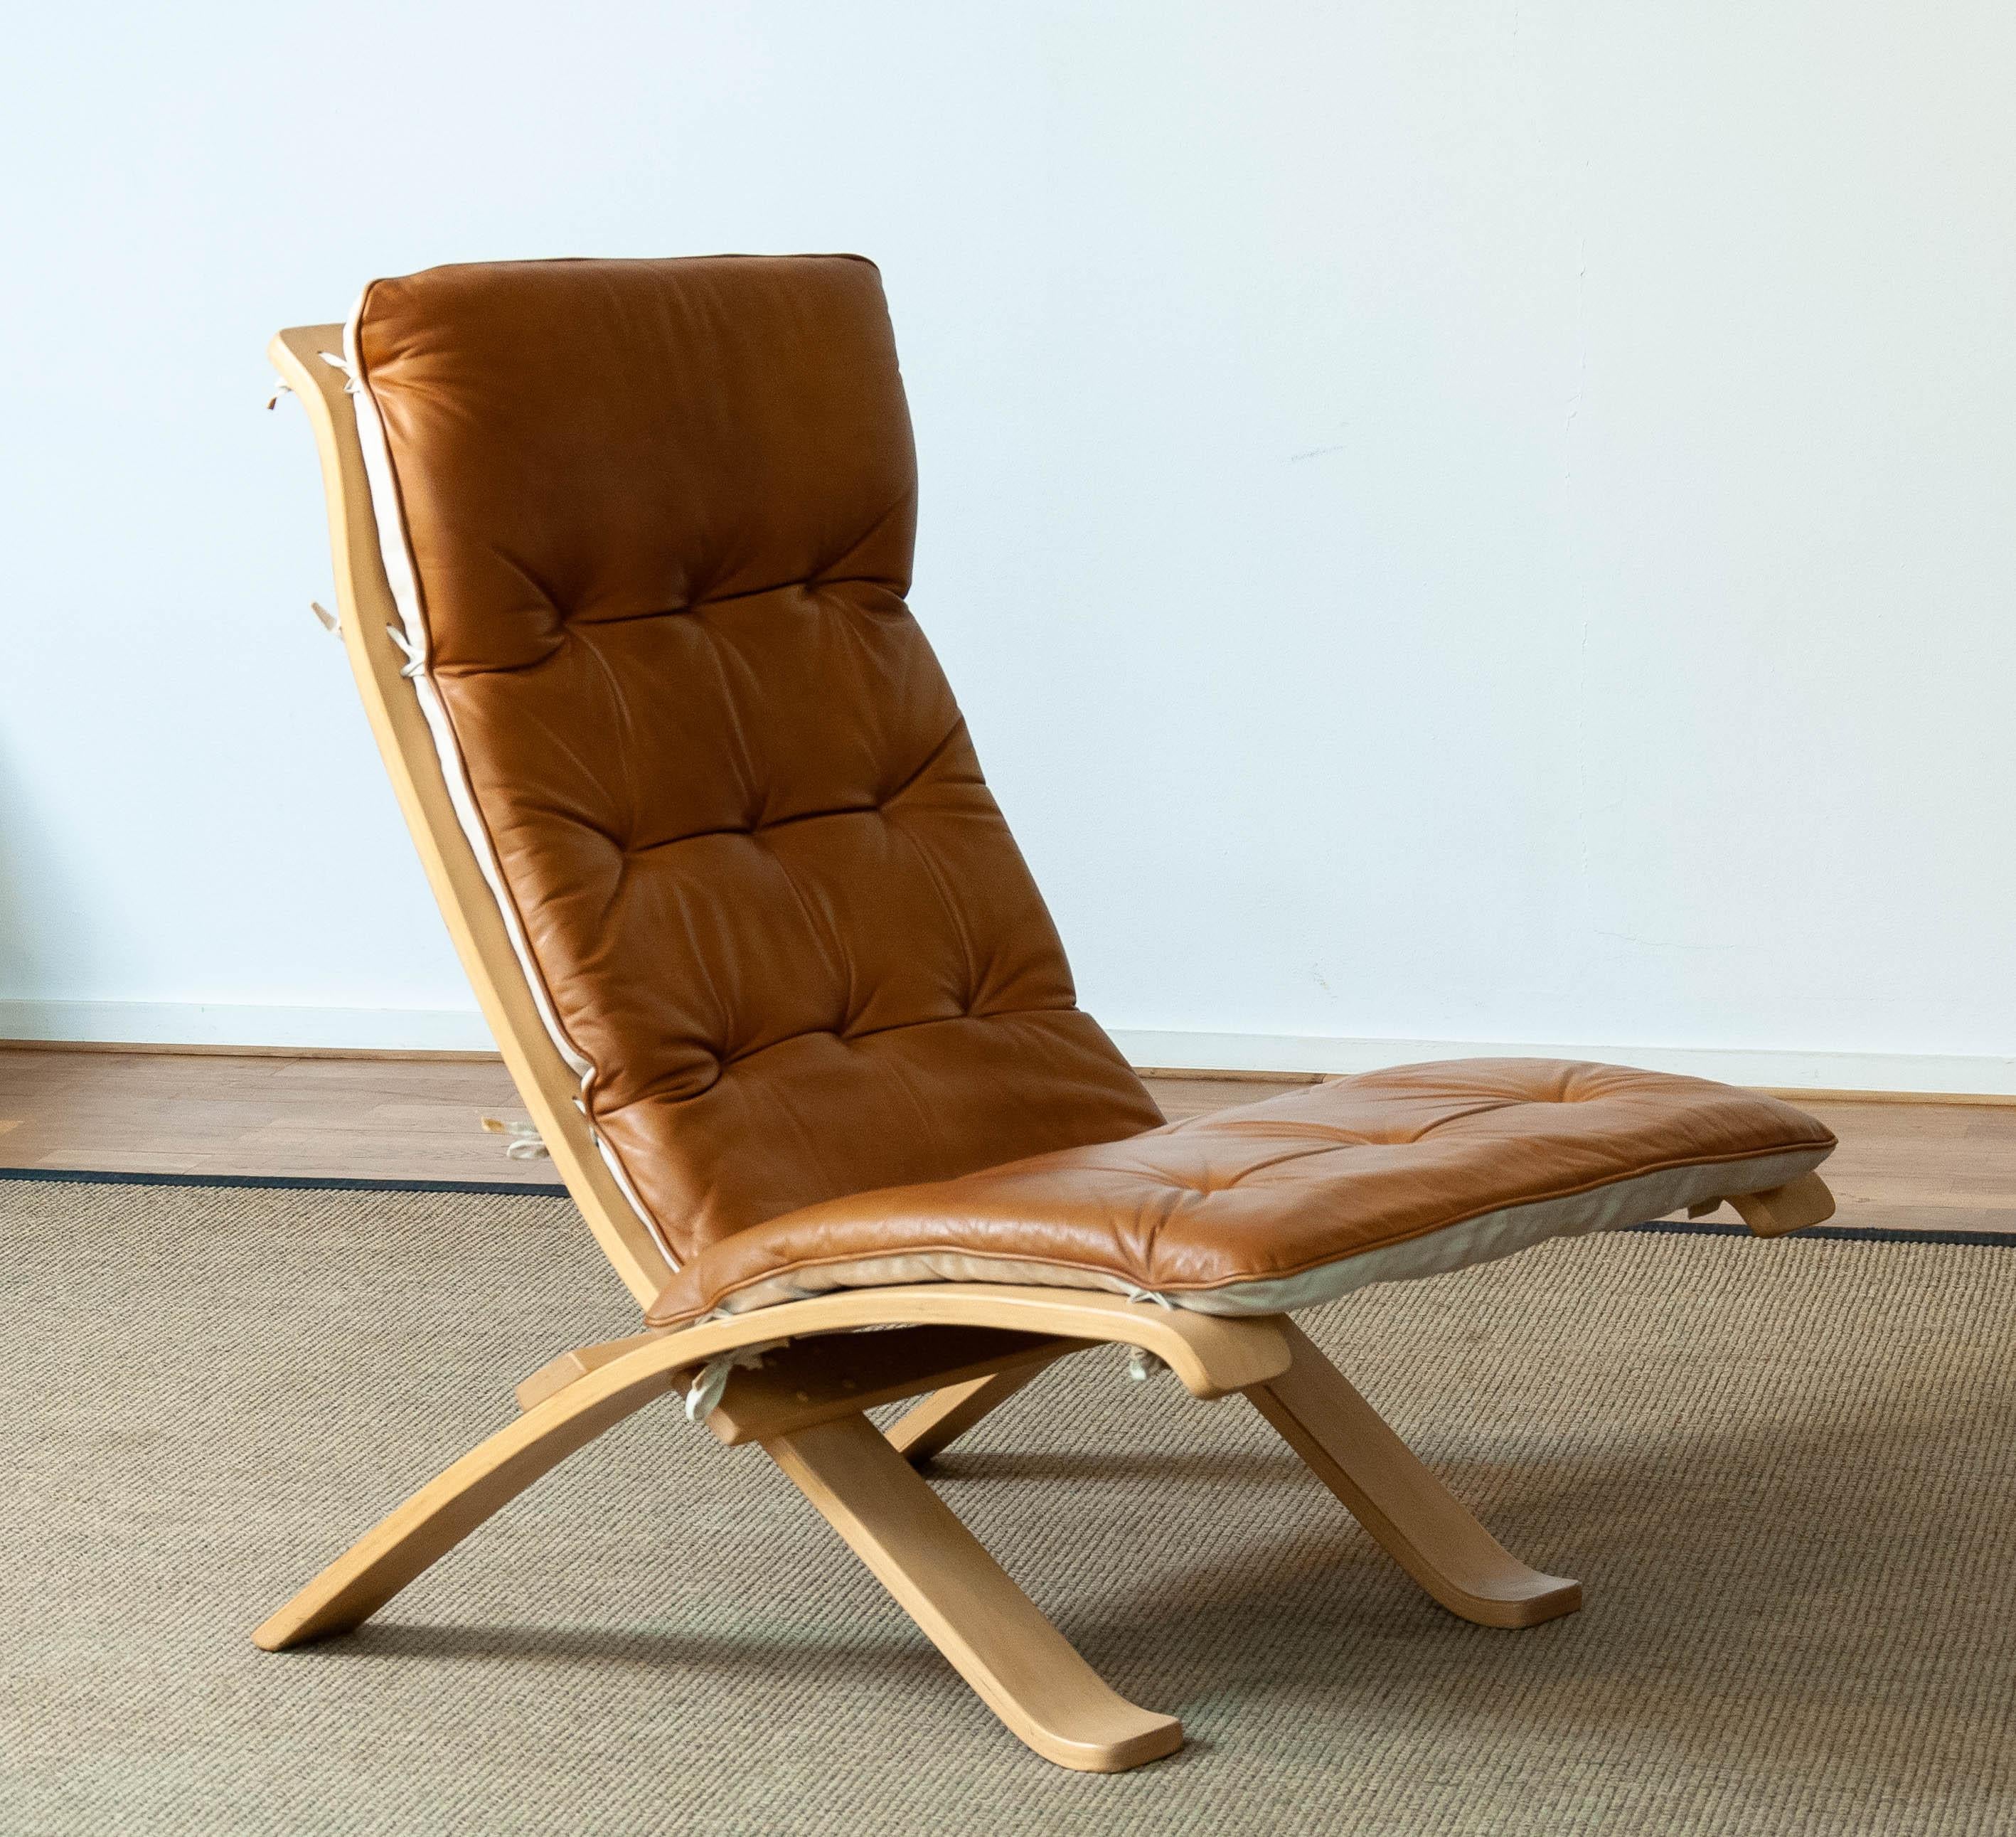 Chaise pliante extrêmement rare, conçue par Åke Foldes pour Nelo Sweden, en hêtre et recouverte de cuir cognac. Cette solution fantastique, qui consiste à n'installer un fauteuil extrêmement confortable dans votre salon qu'en cas de besoin, a été